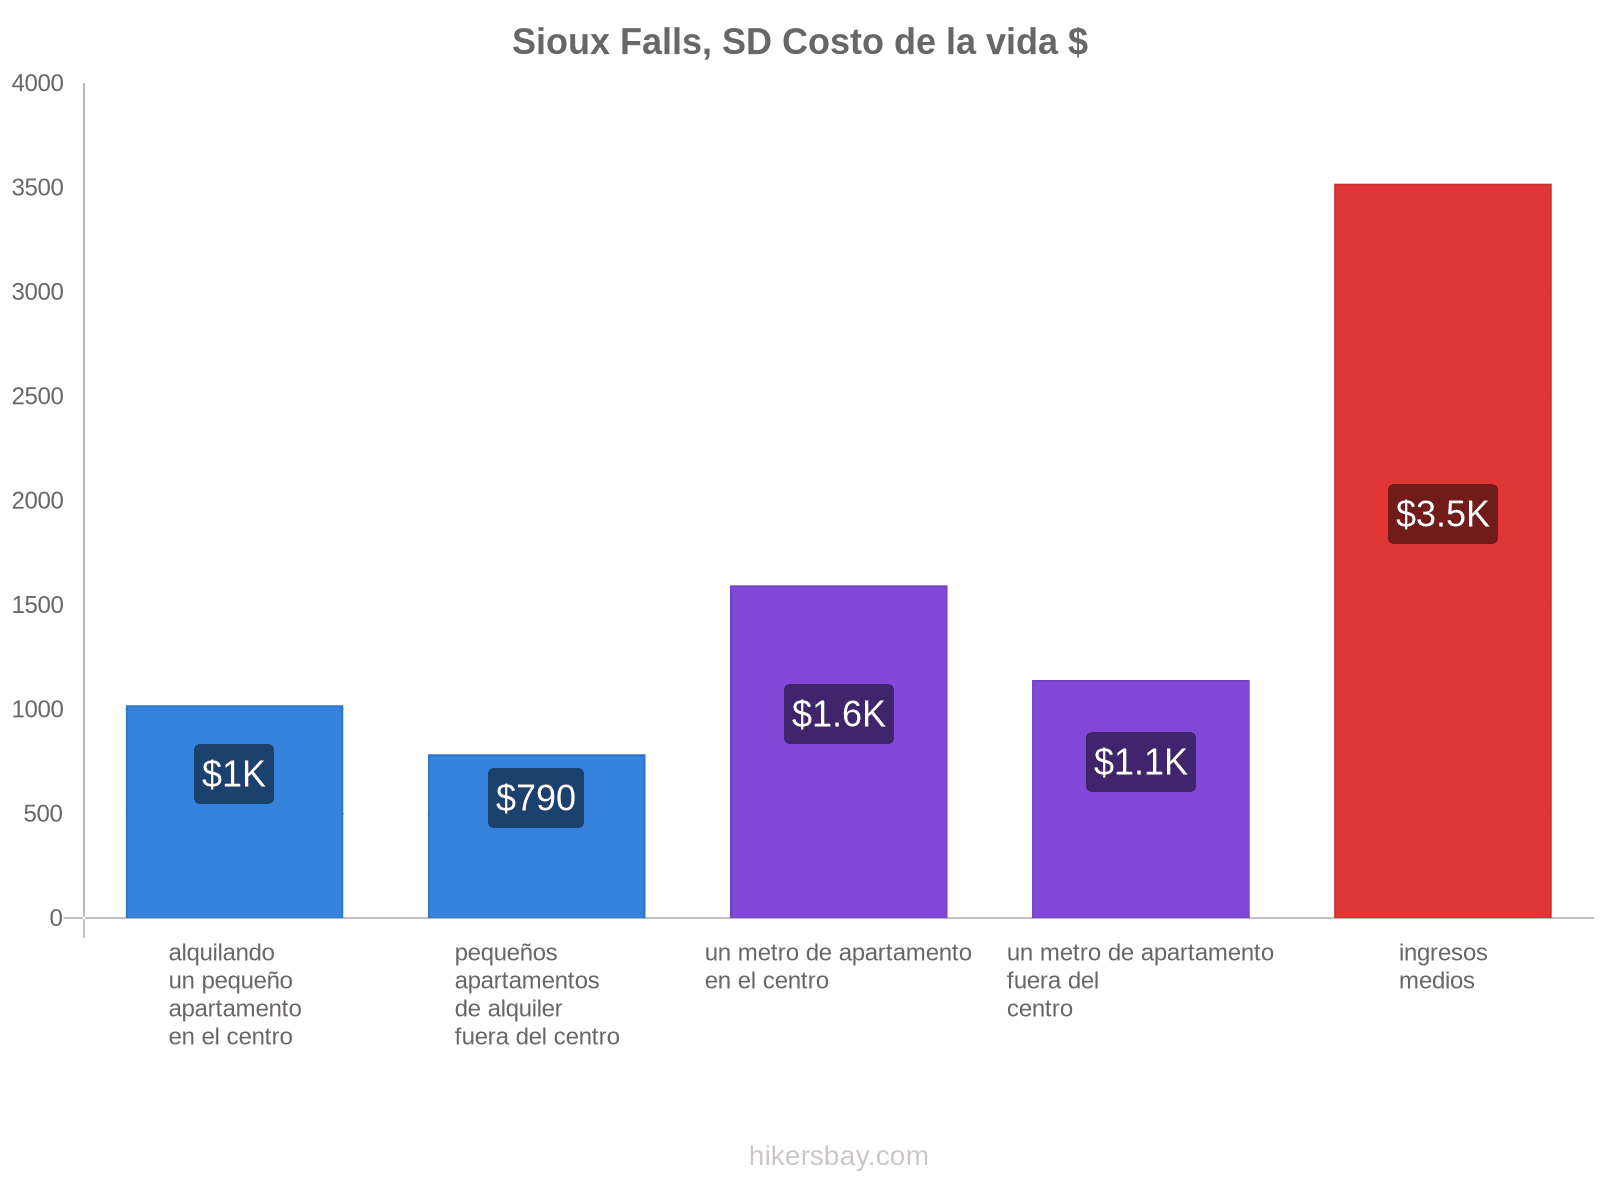 Sioux Falls, SD costo de la vida hikersbay.com